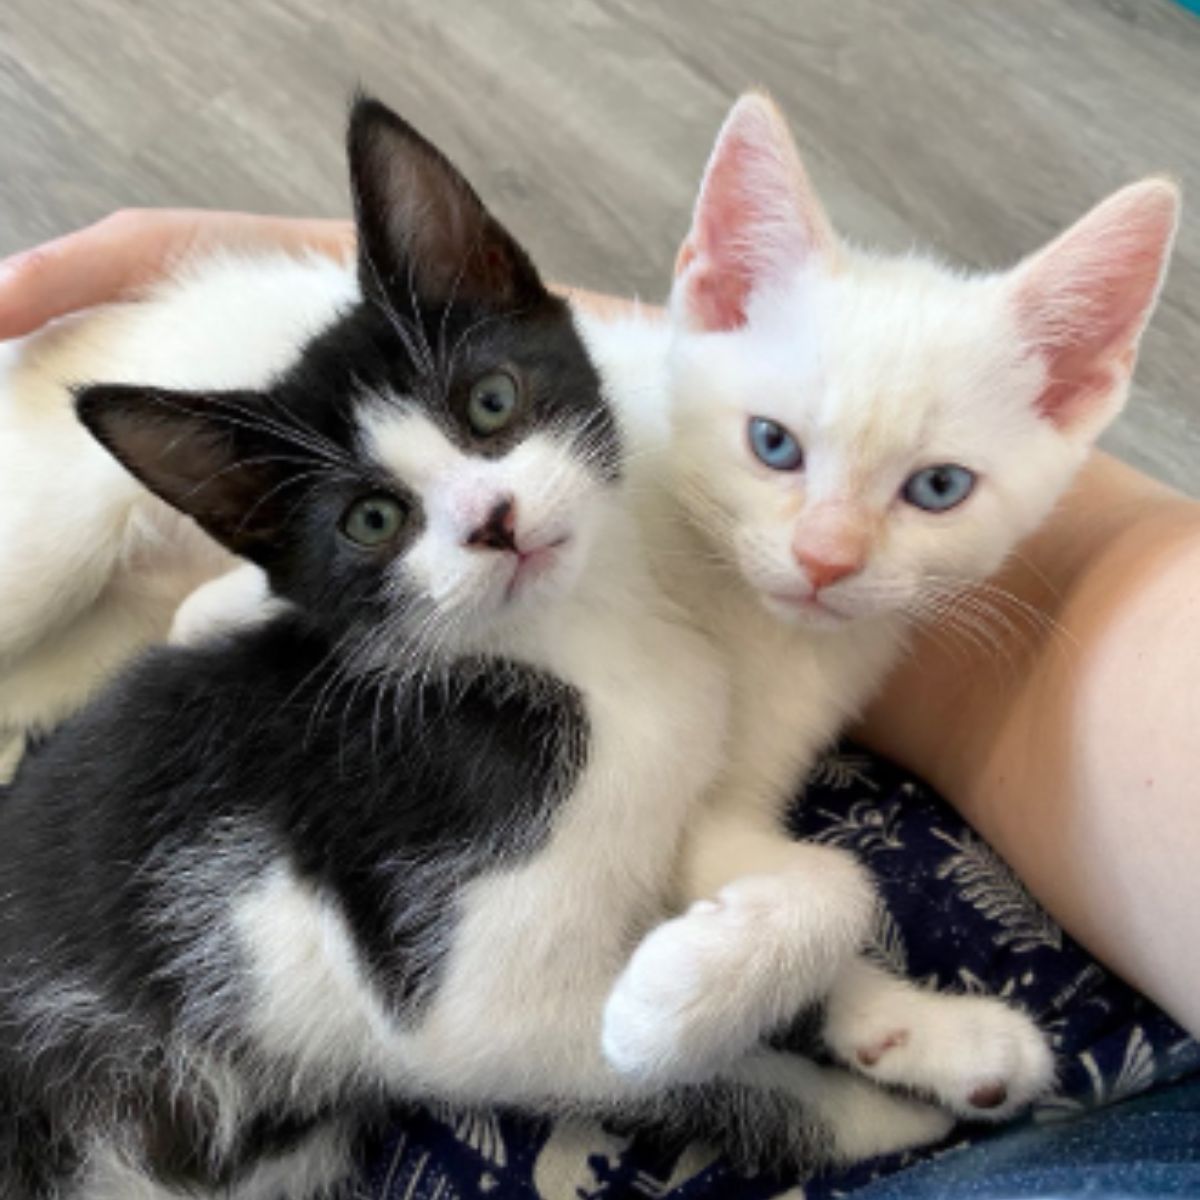 kittens in a lap